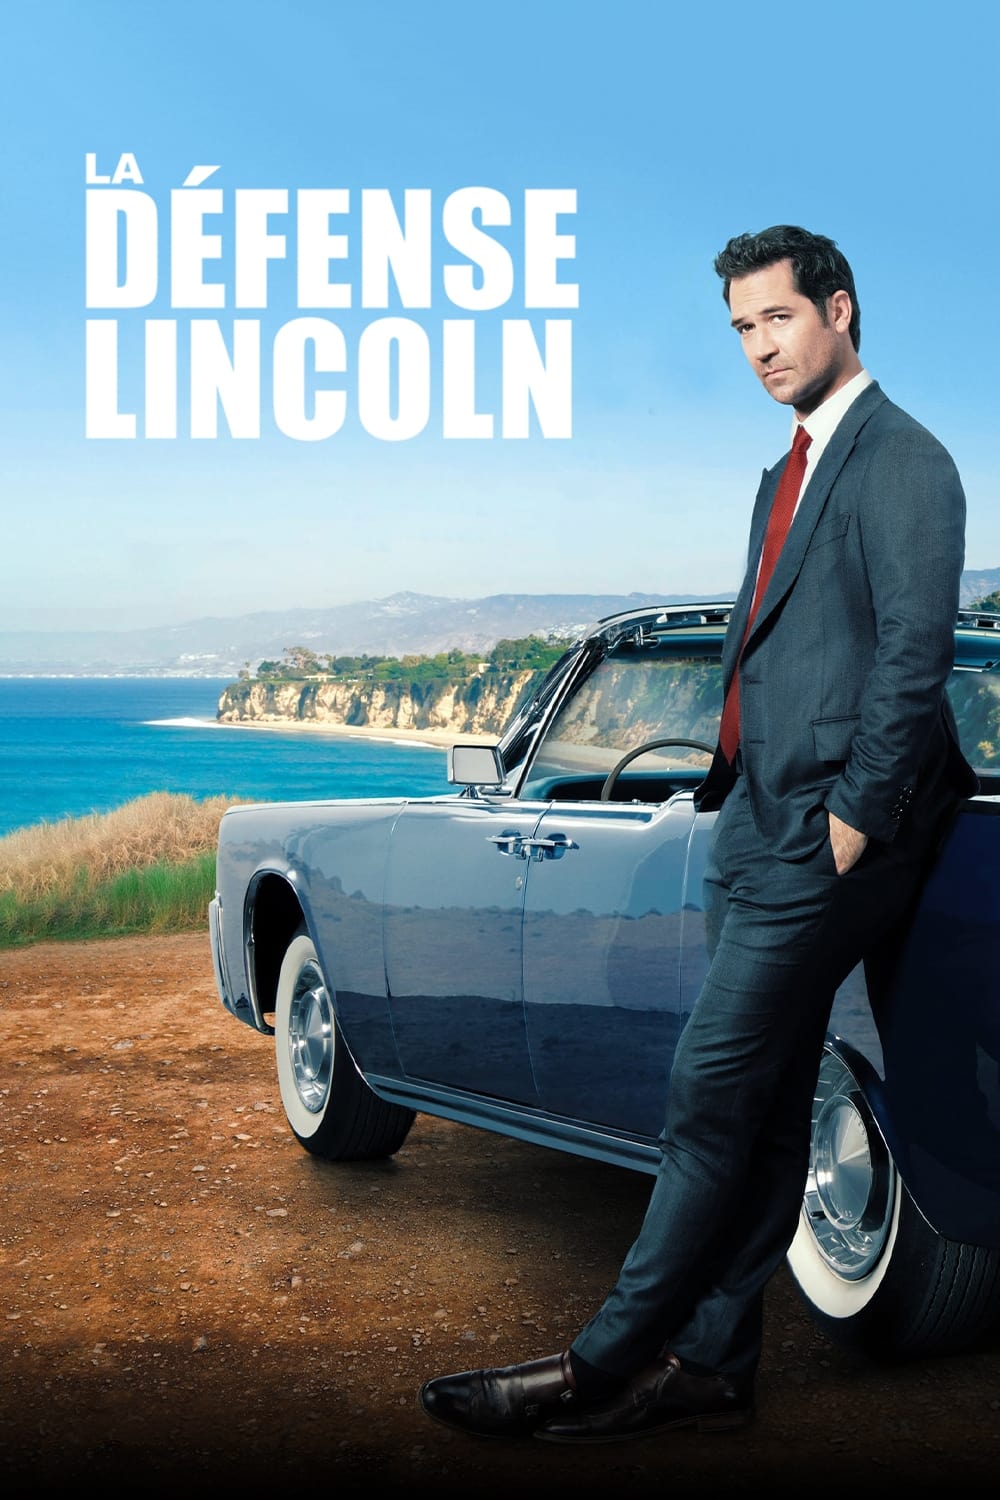 Les saisons de La Défense Lincoln sont-elles disponibles sur Netflix ou autre ?